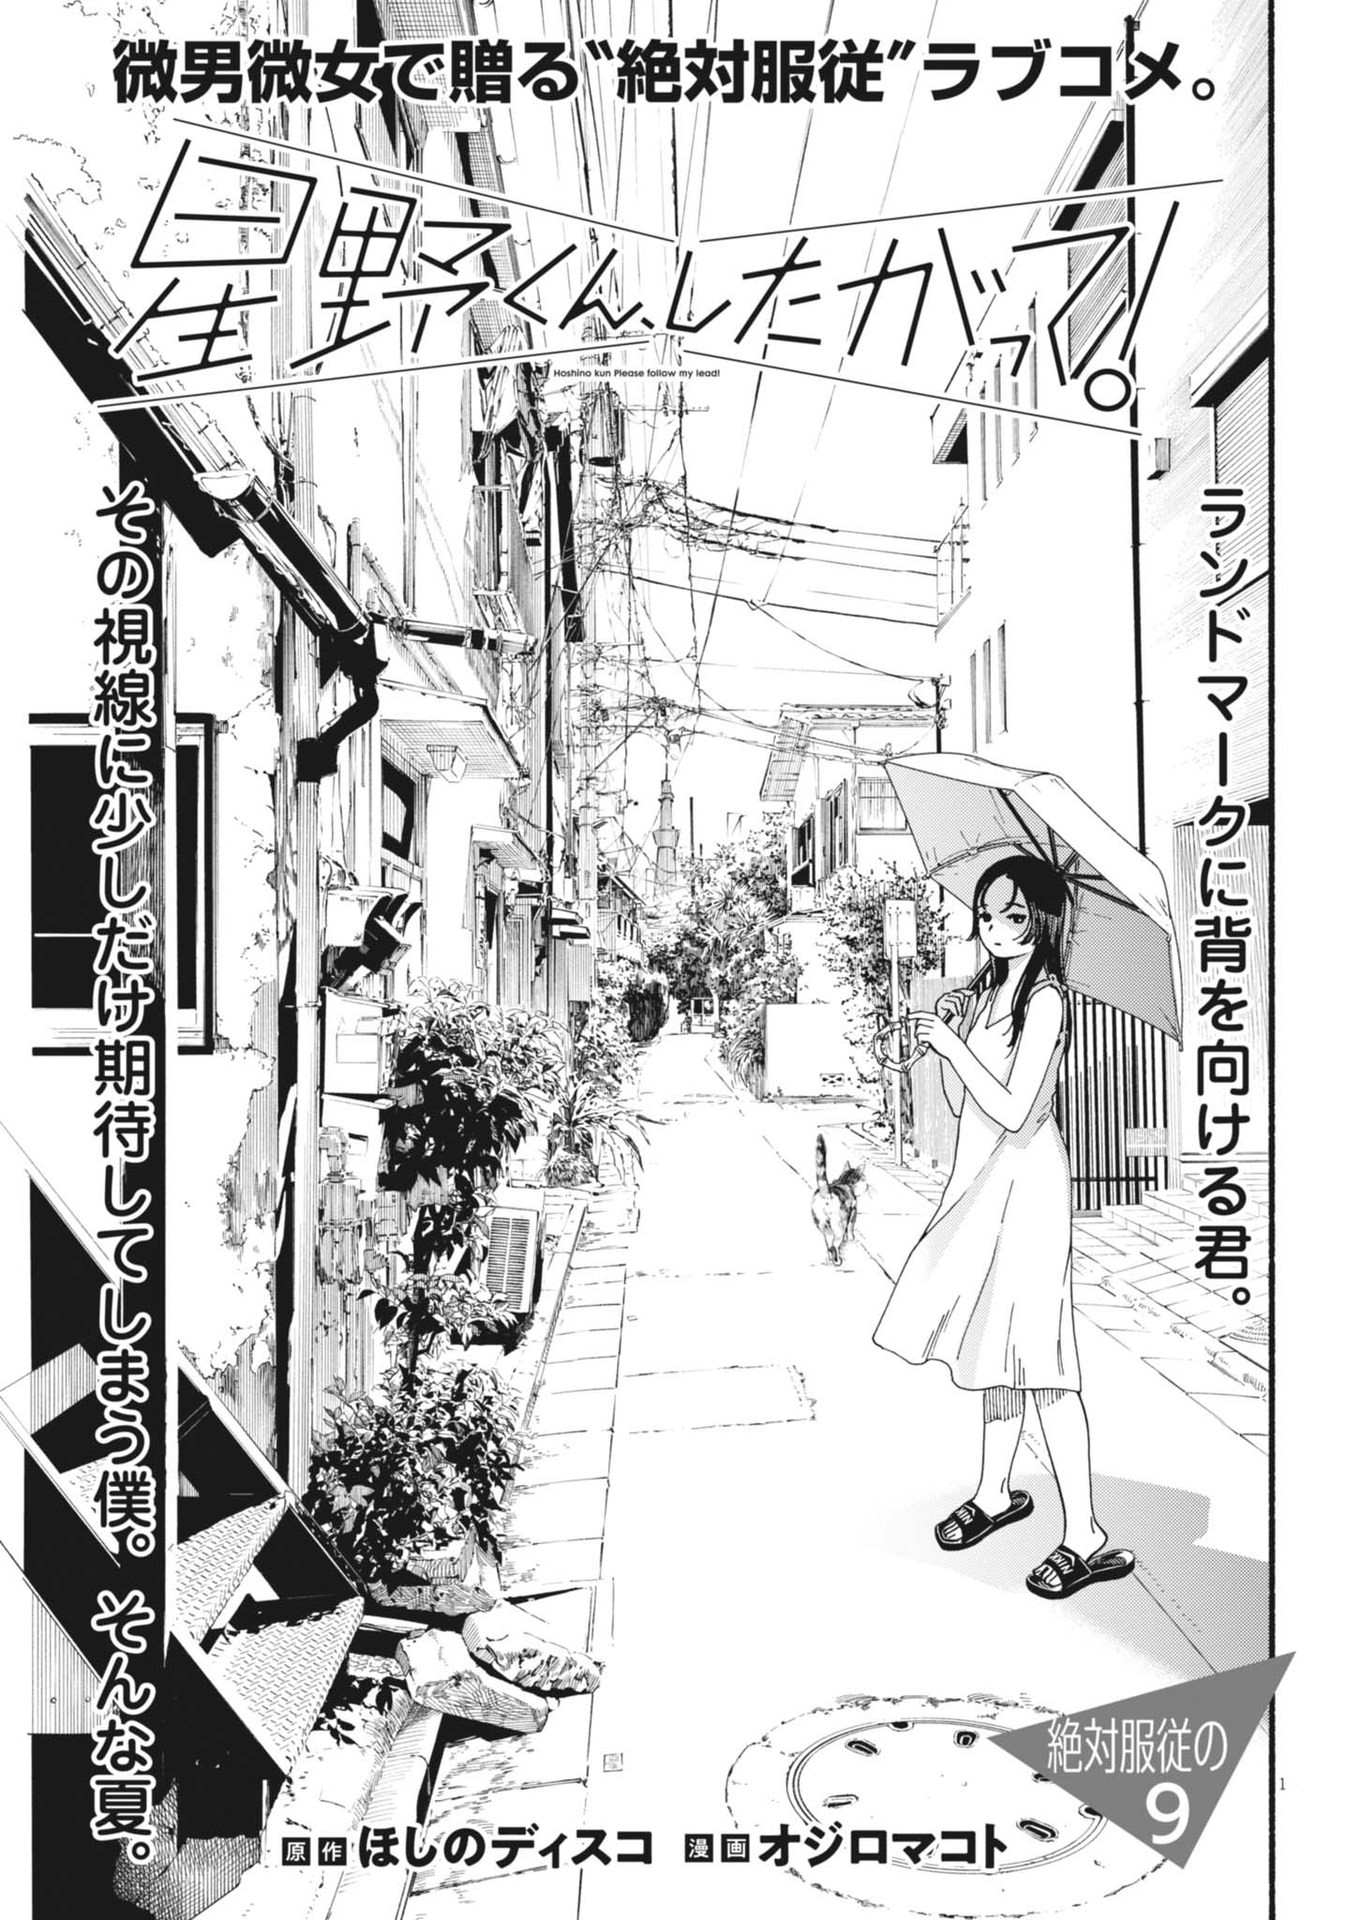 Hoshino-kun, Shitagatte! - Chapter 9 - Page 1